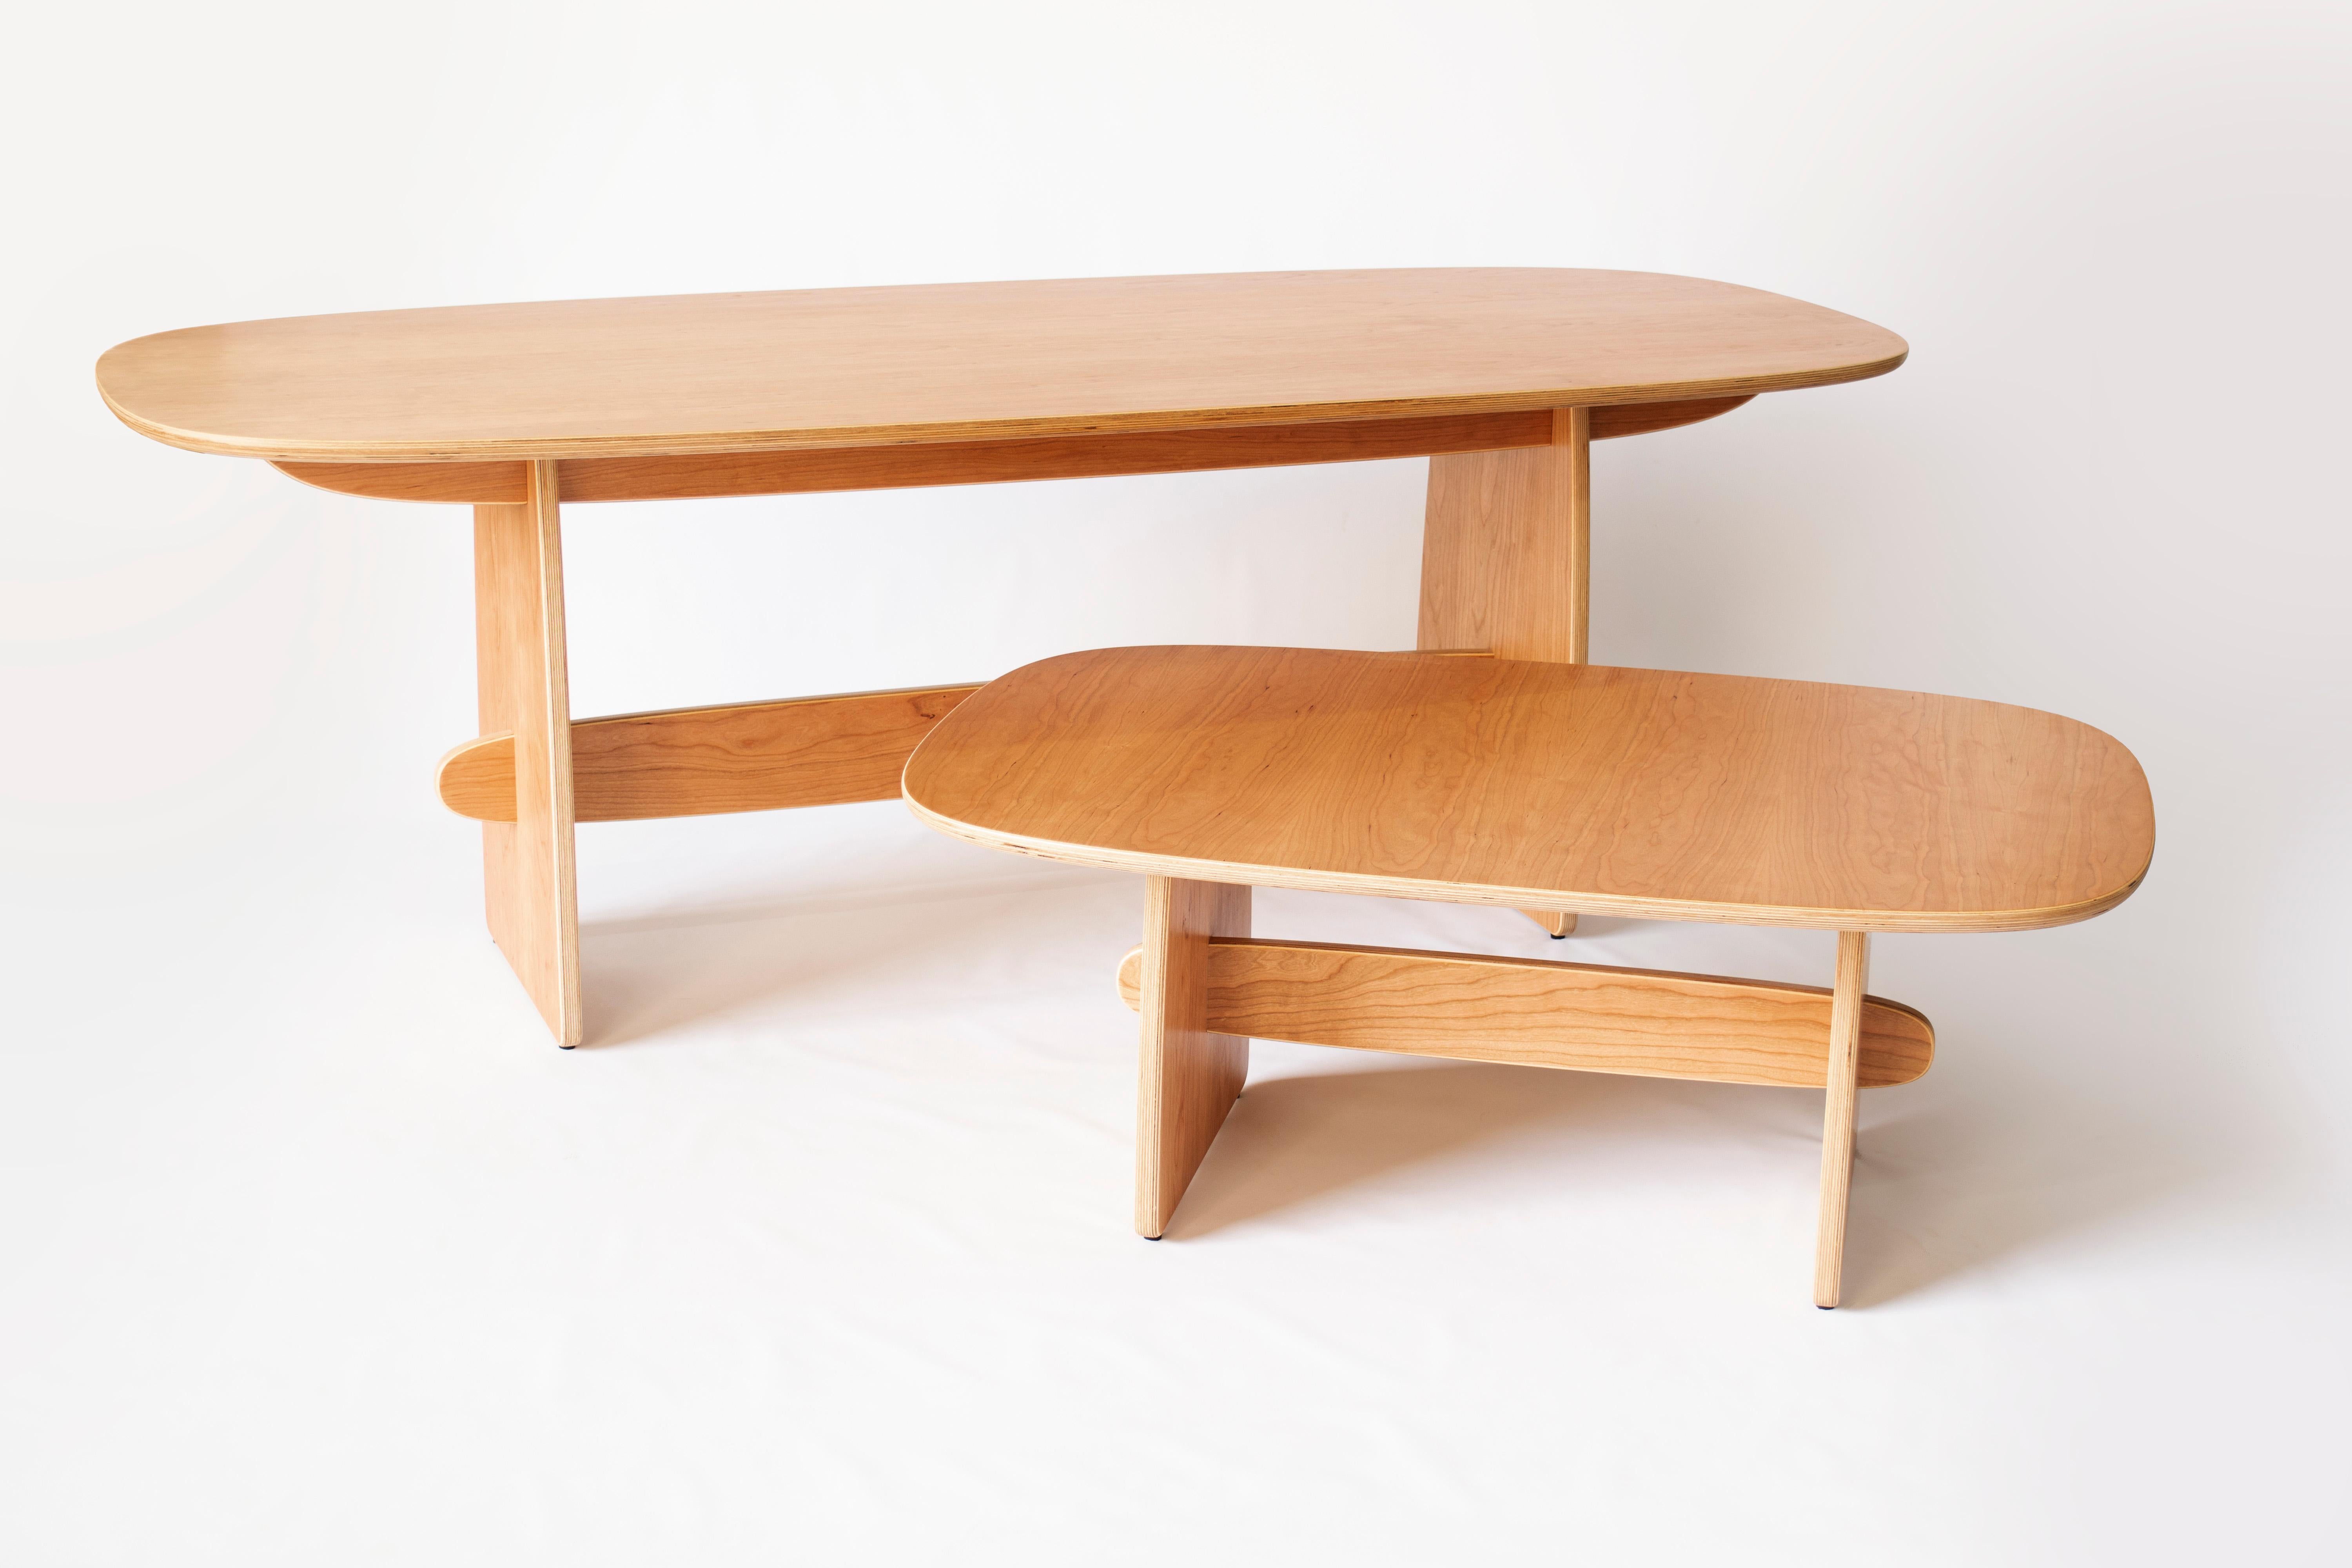 Woodbine Dining Table in cherry veneer hardwood plywood by KLN Studio For Sale 1